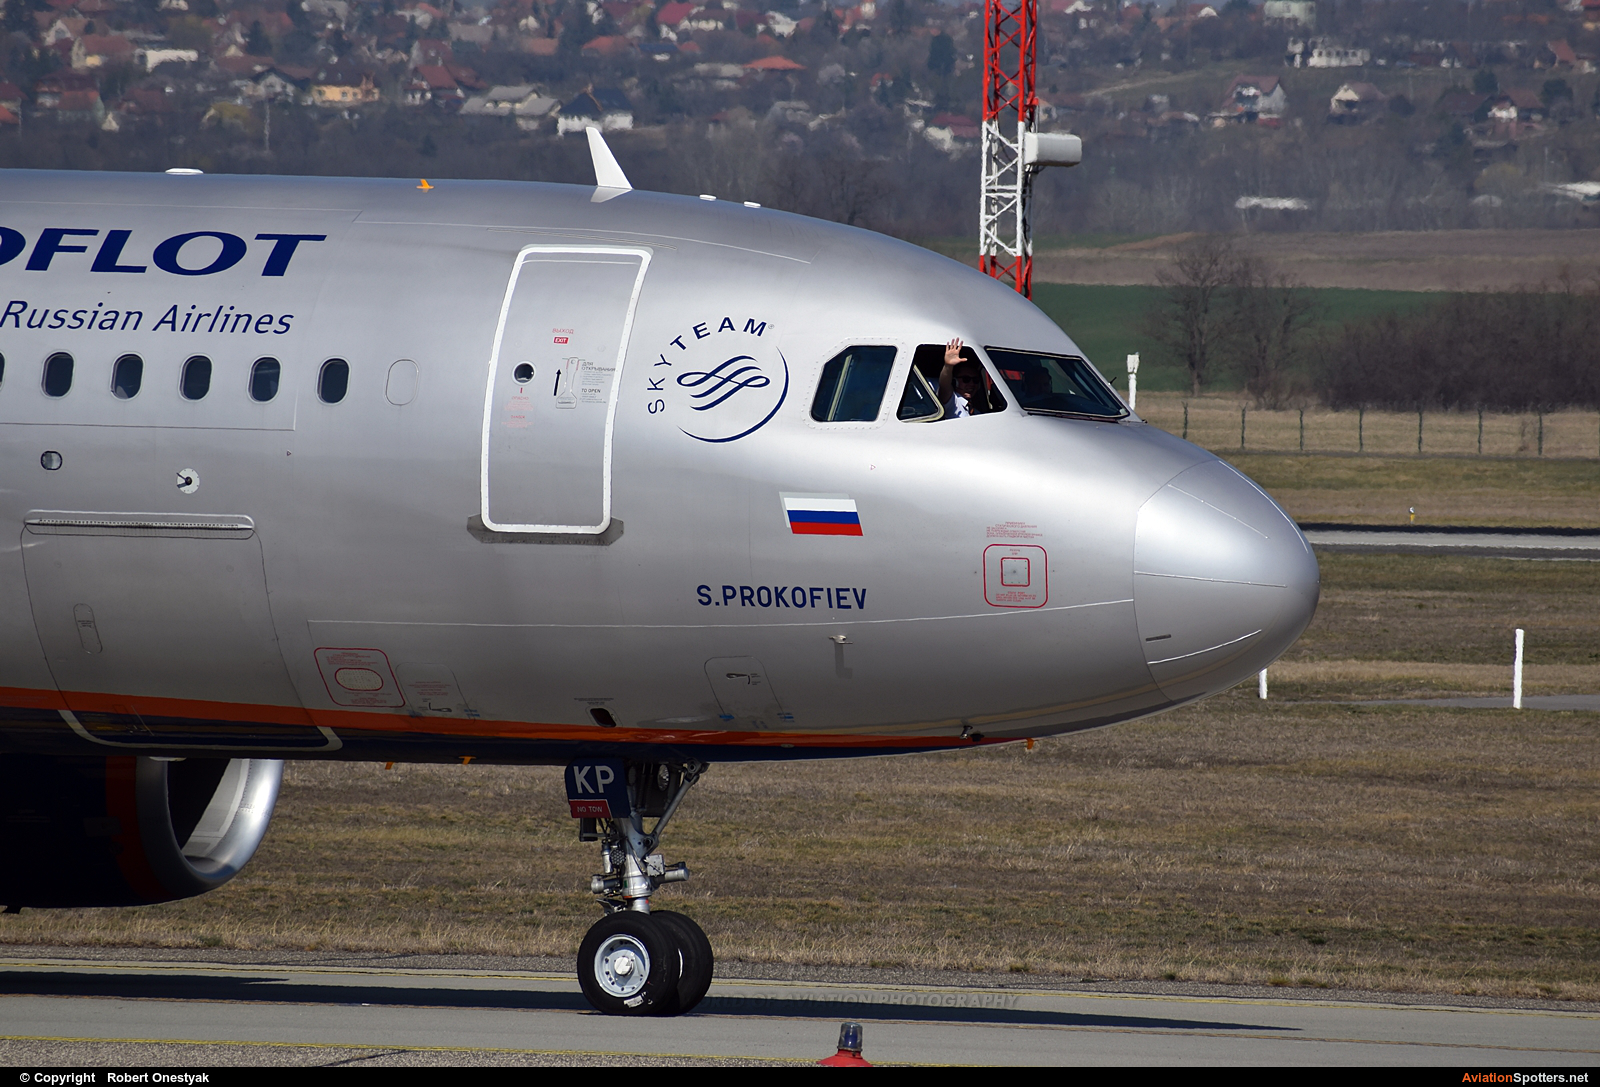 Aeroflot  -  A320  (VP-BKP) By Robert Onestyak (Robert.814)